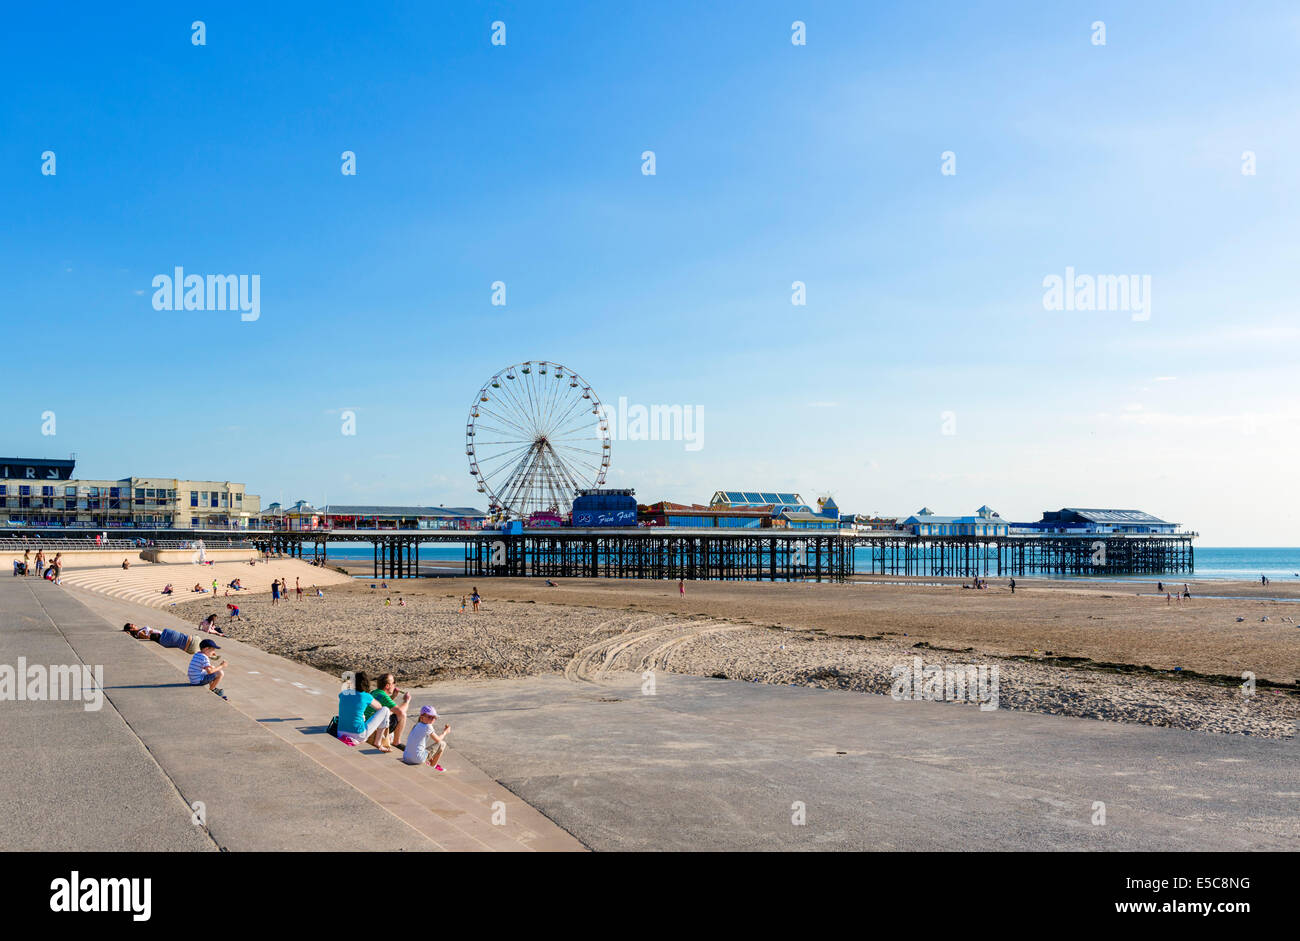 Plage et Central Pier en fin d'après-midi, le Golden Mile, Blackpool, Lancashire, UK Banque D'Images